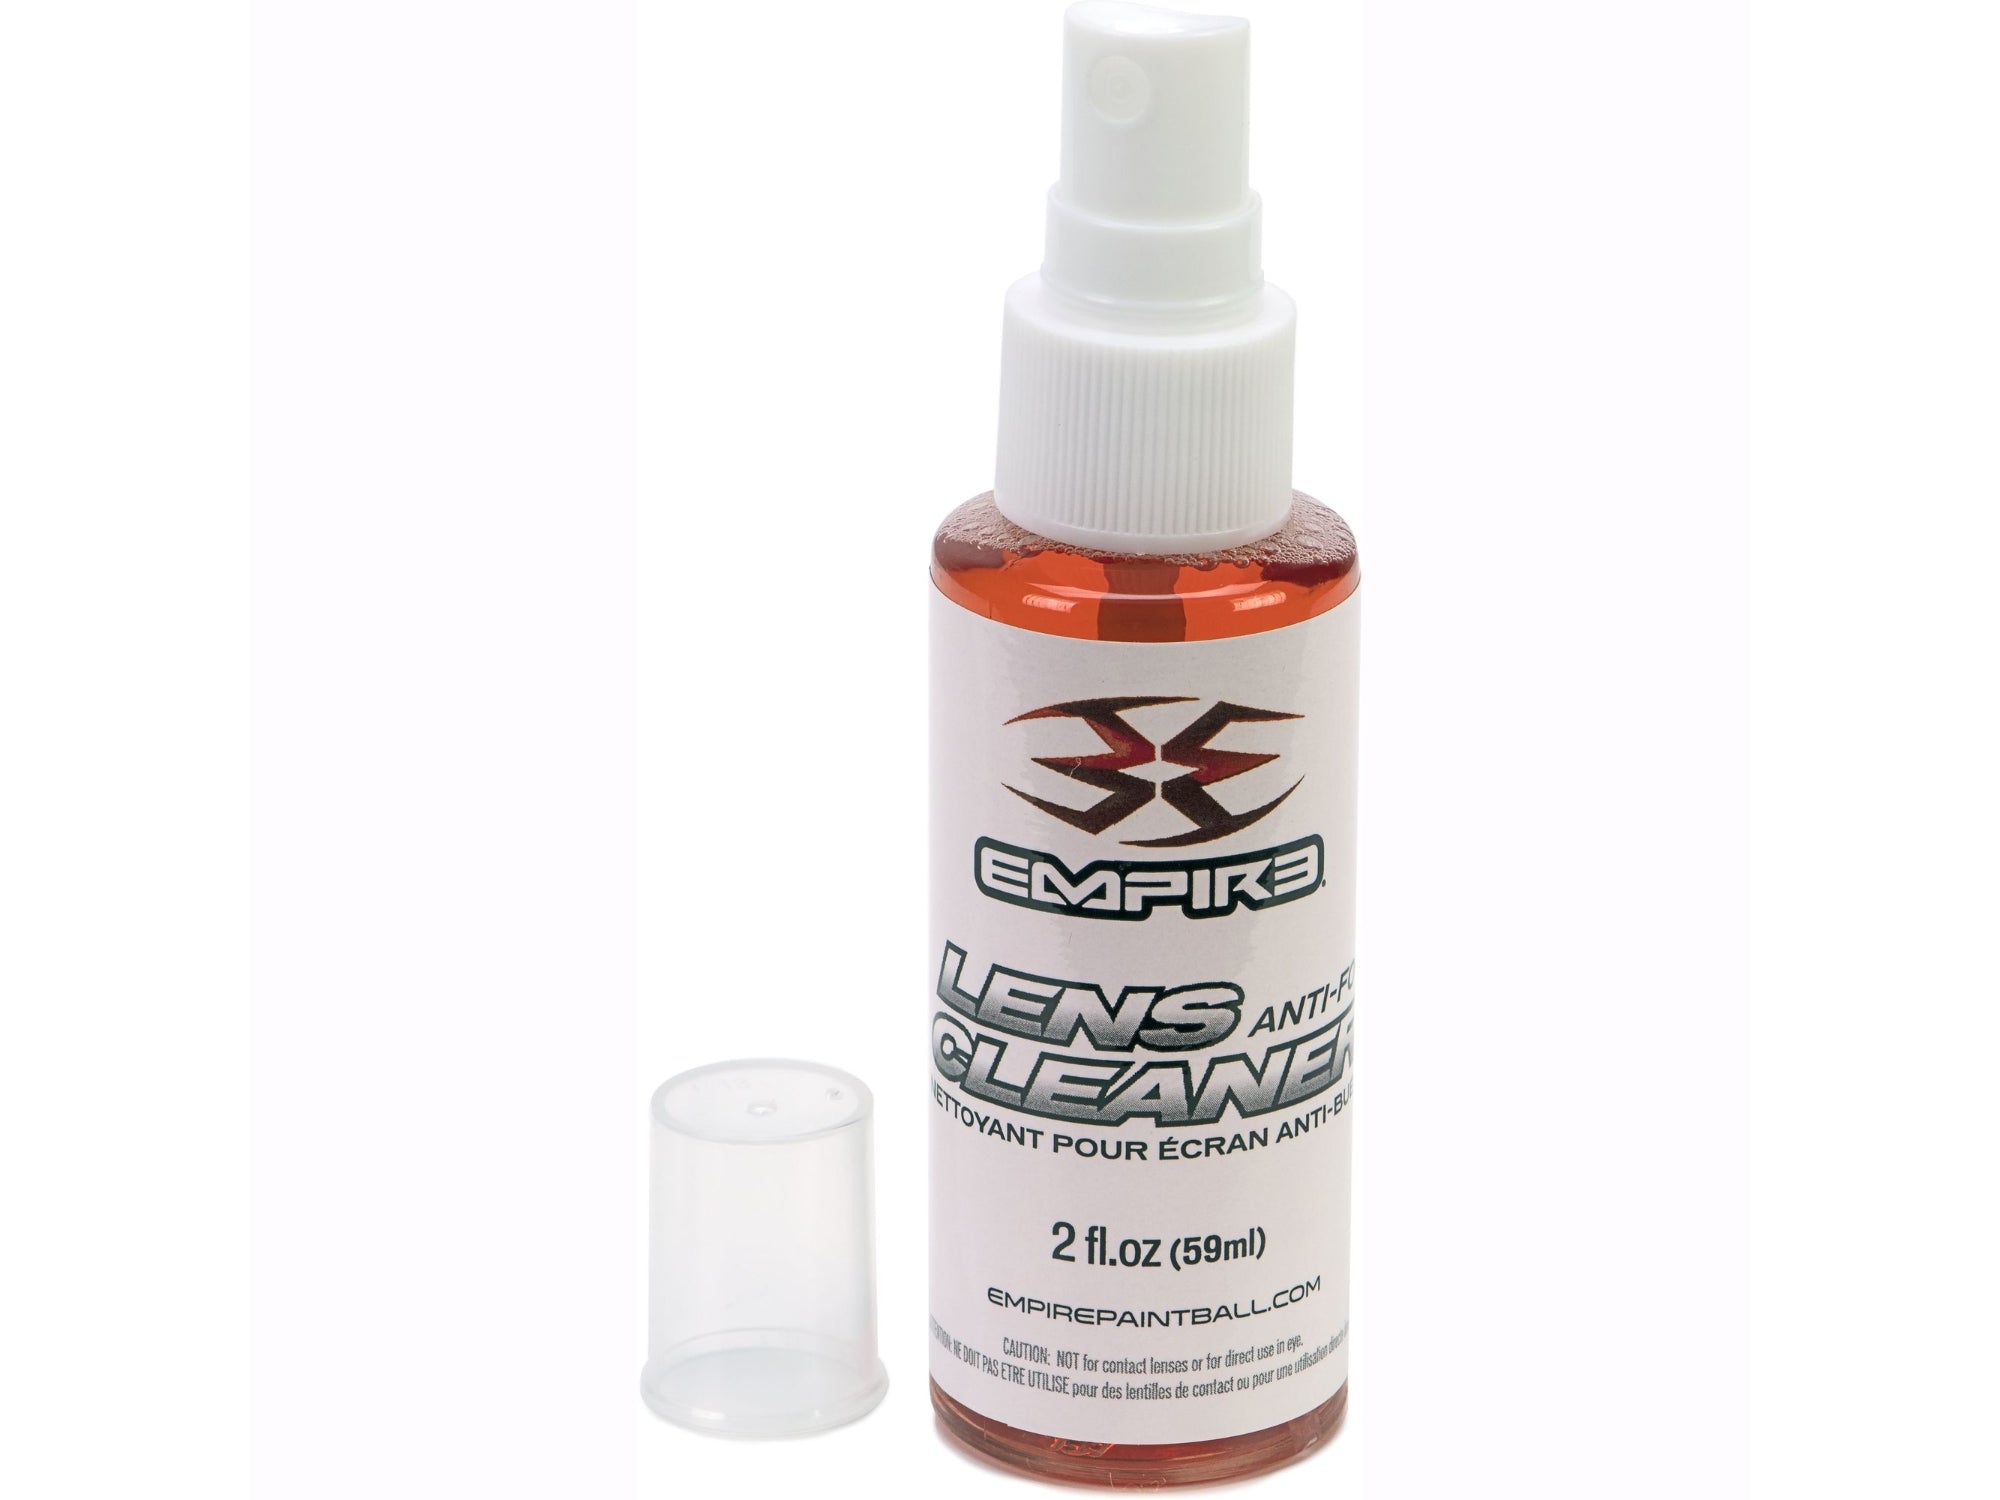 Empire Antifog Lens Cleaner Spray